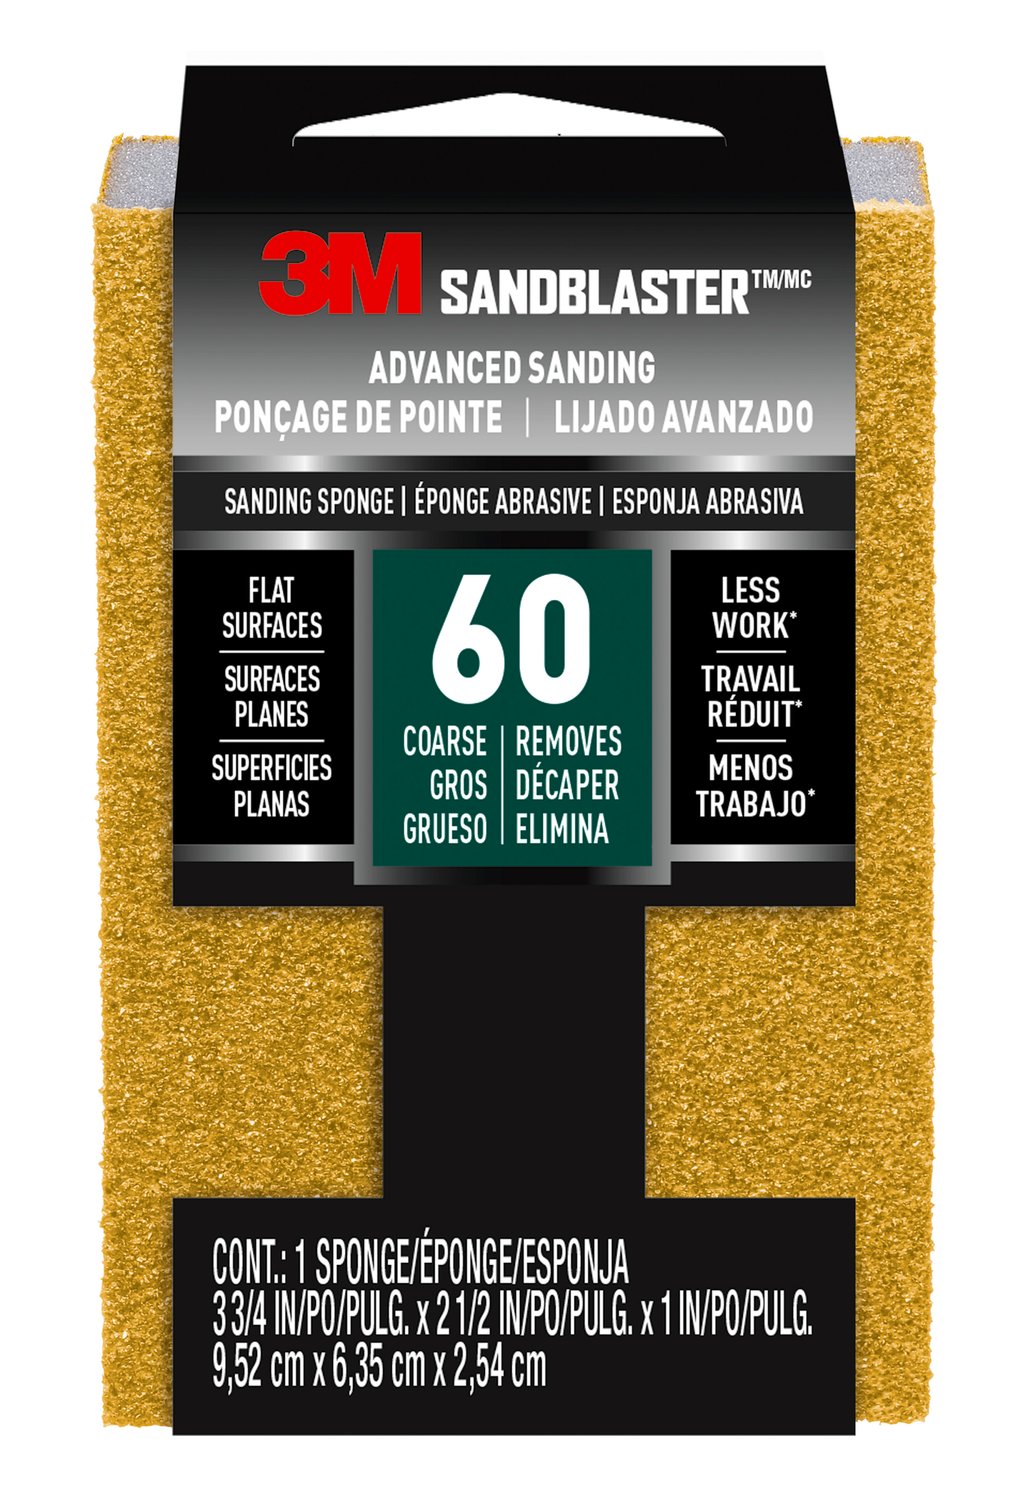 7100268068 - 3M SandBlaster Advanced Sanding Sanding Sponge 20909-60, 60 grit, 3 3/4 in x 2 1/2 x 1 in, 1/pk